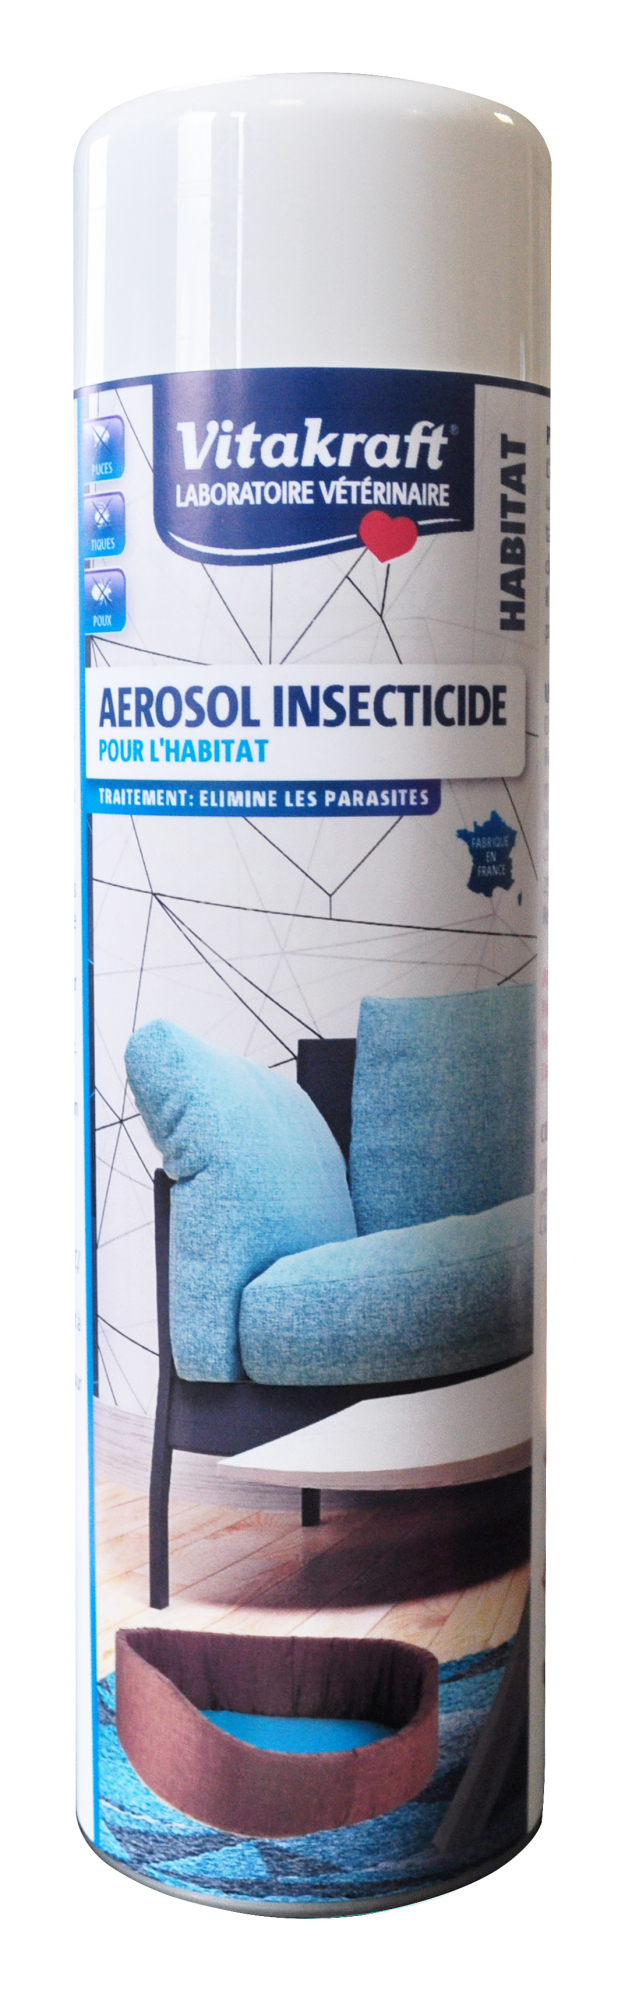 Aérosol Insecticide pour l'habitat VITAKRAFT